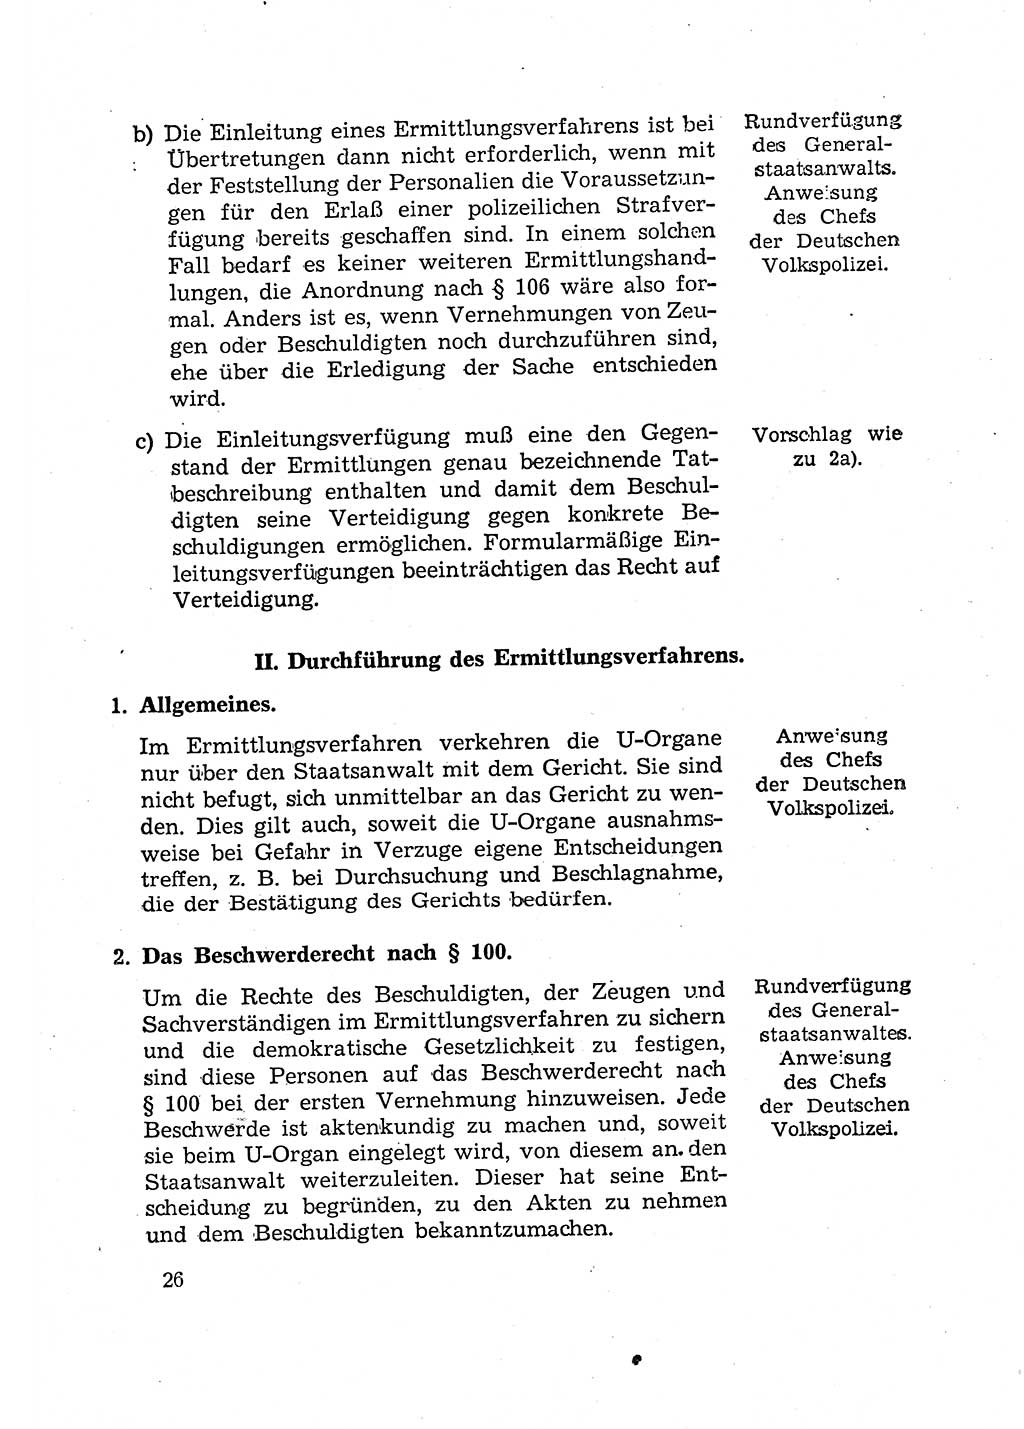 Bericht der Kommission zur Überprüfung der Anwendung der StPO (Strafprozeßordnung) [Deutsche Demokratische Republik (DDR)] 1956, Seite 26 (Ber. StPO DDR 1956, S. 26)